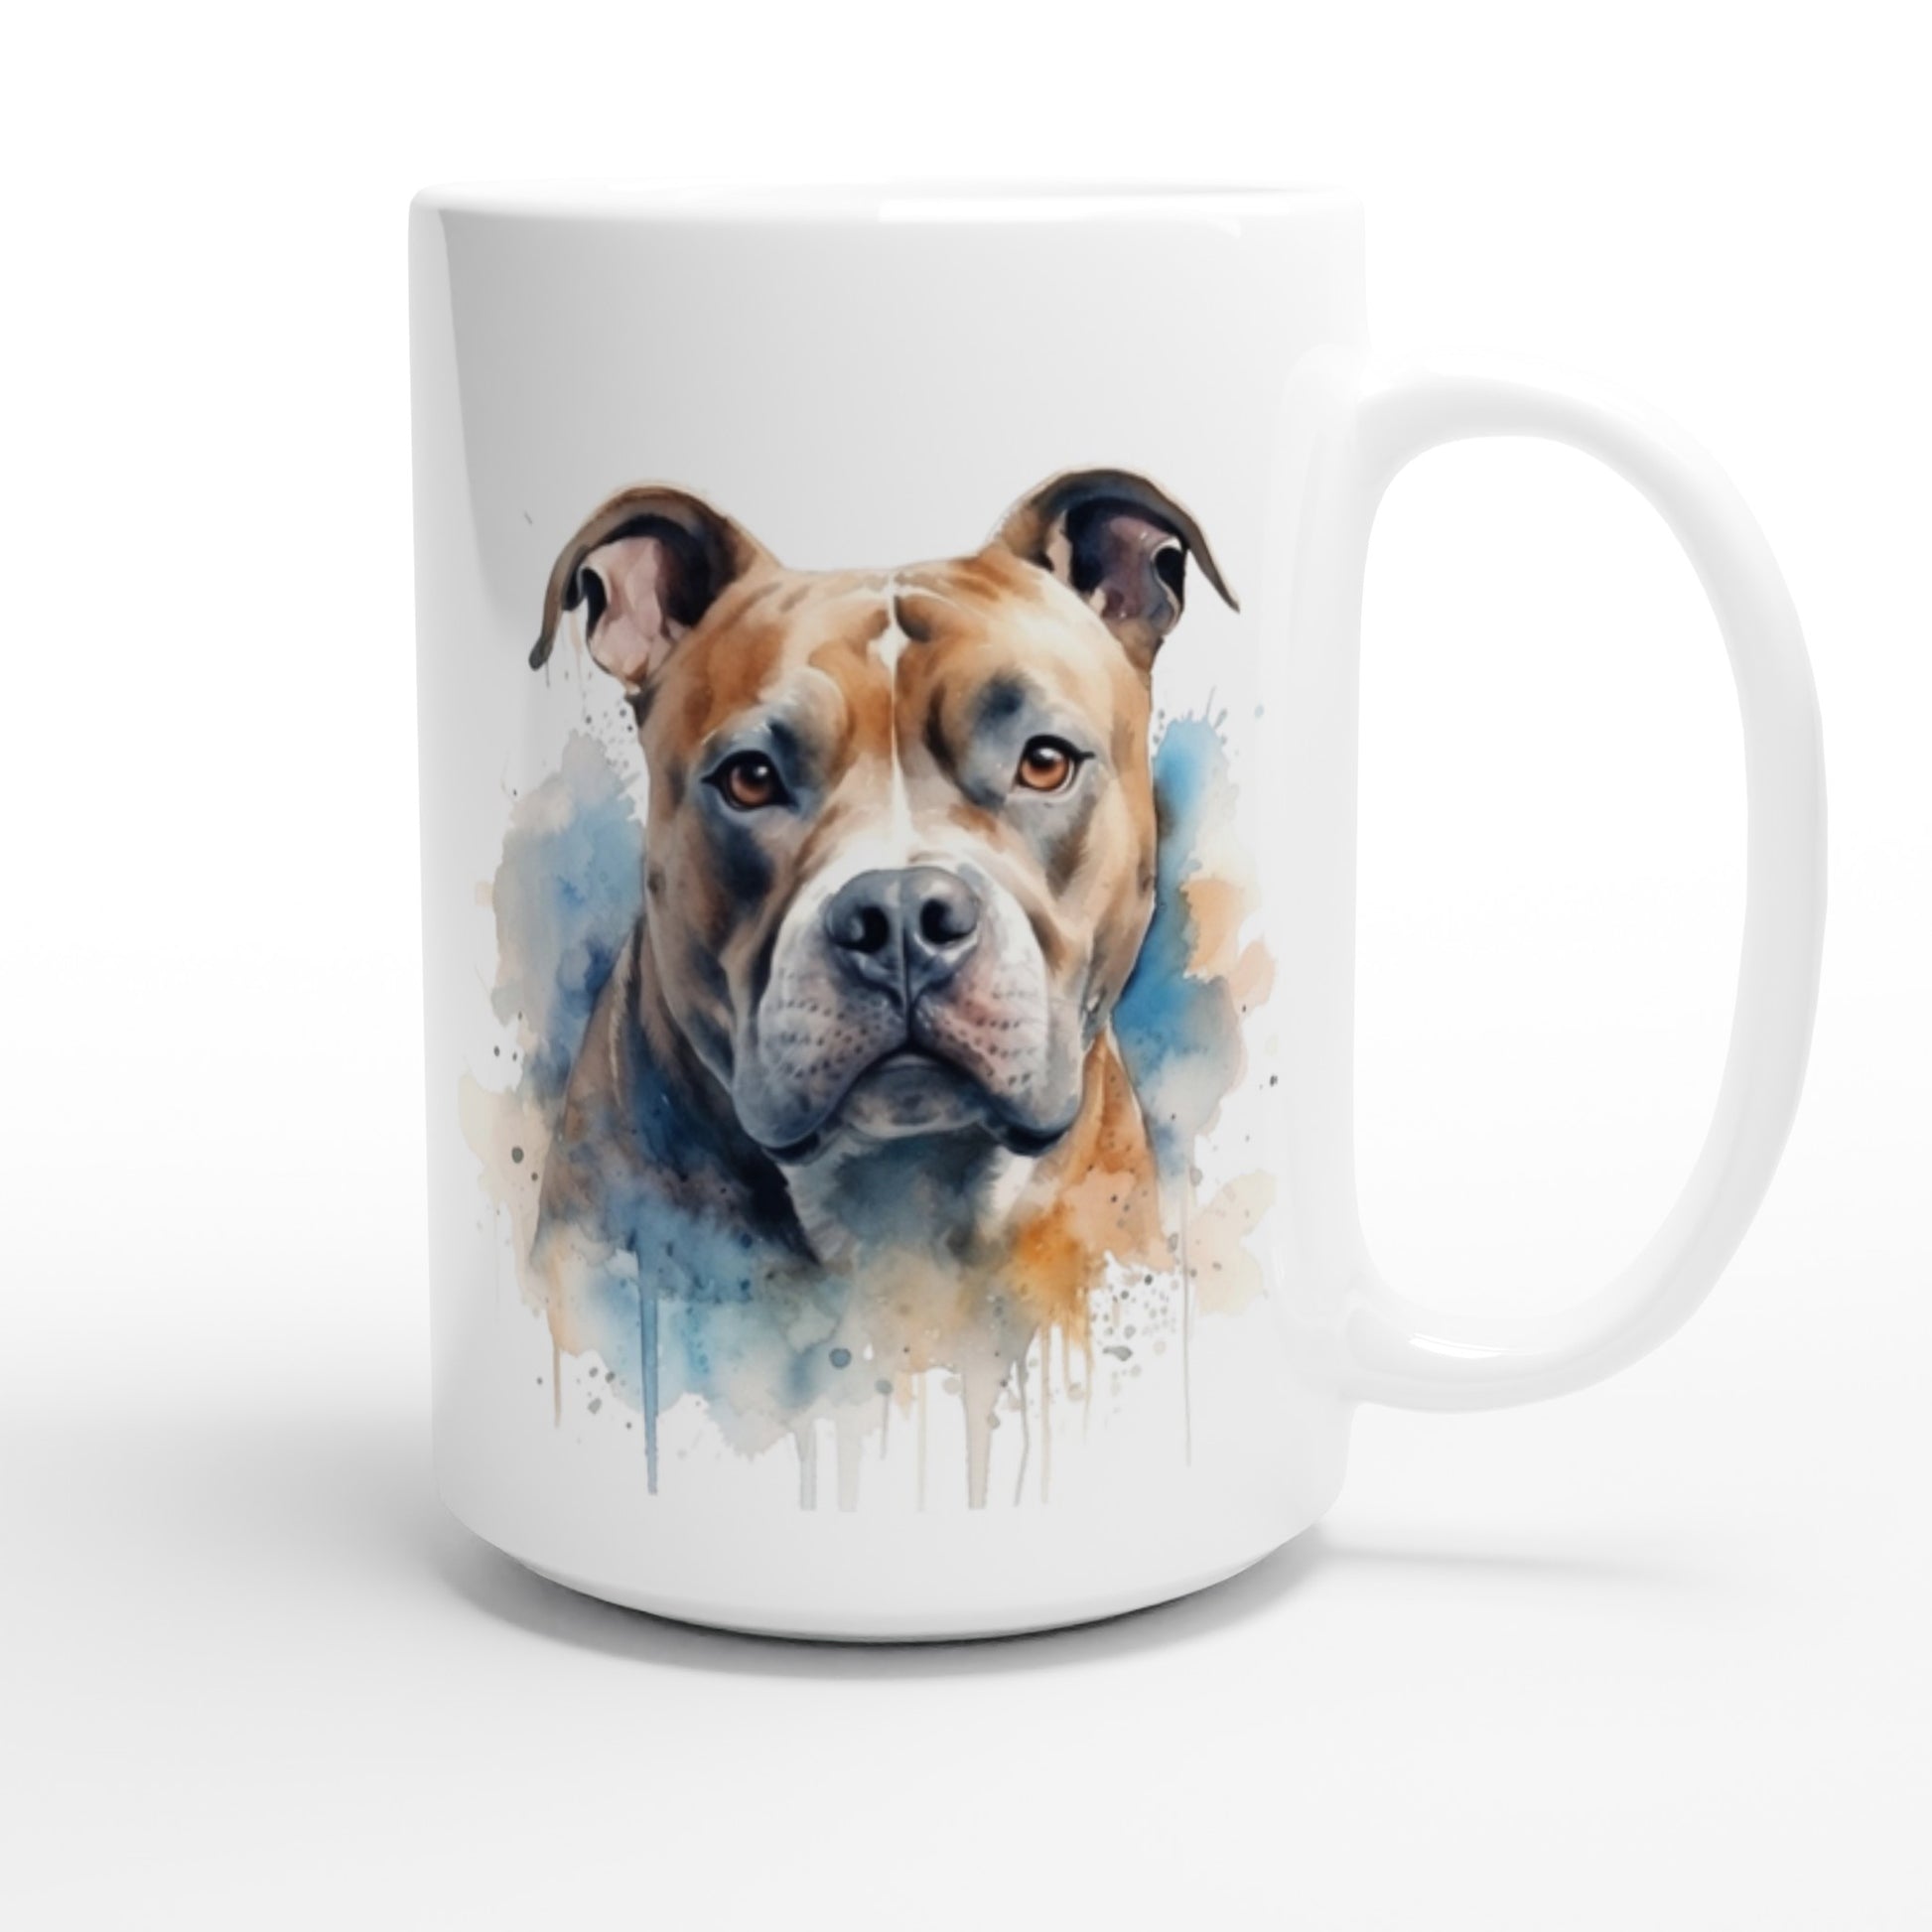 Big Staffy dog mug Australia 